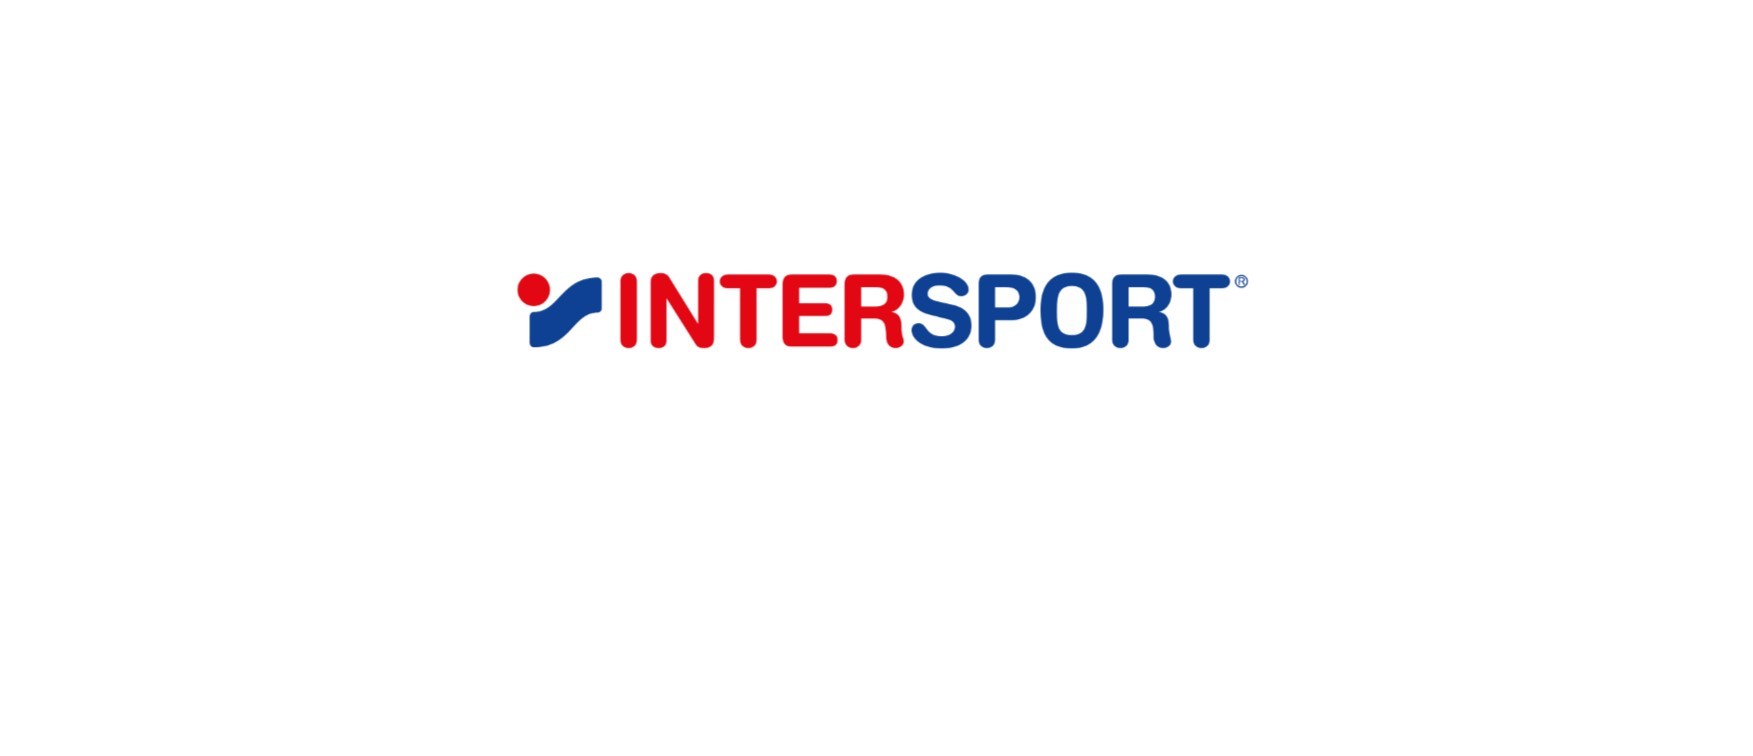 Folytatódik az Intersport 1,2 milliárd forintos fejlesztési programja